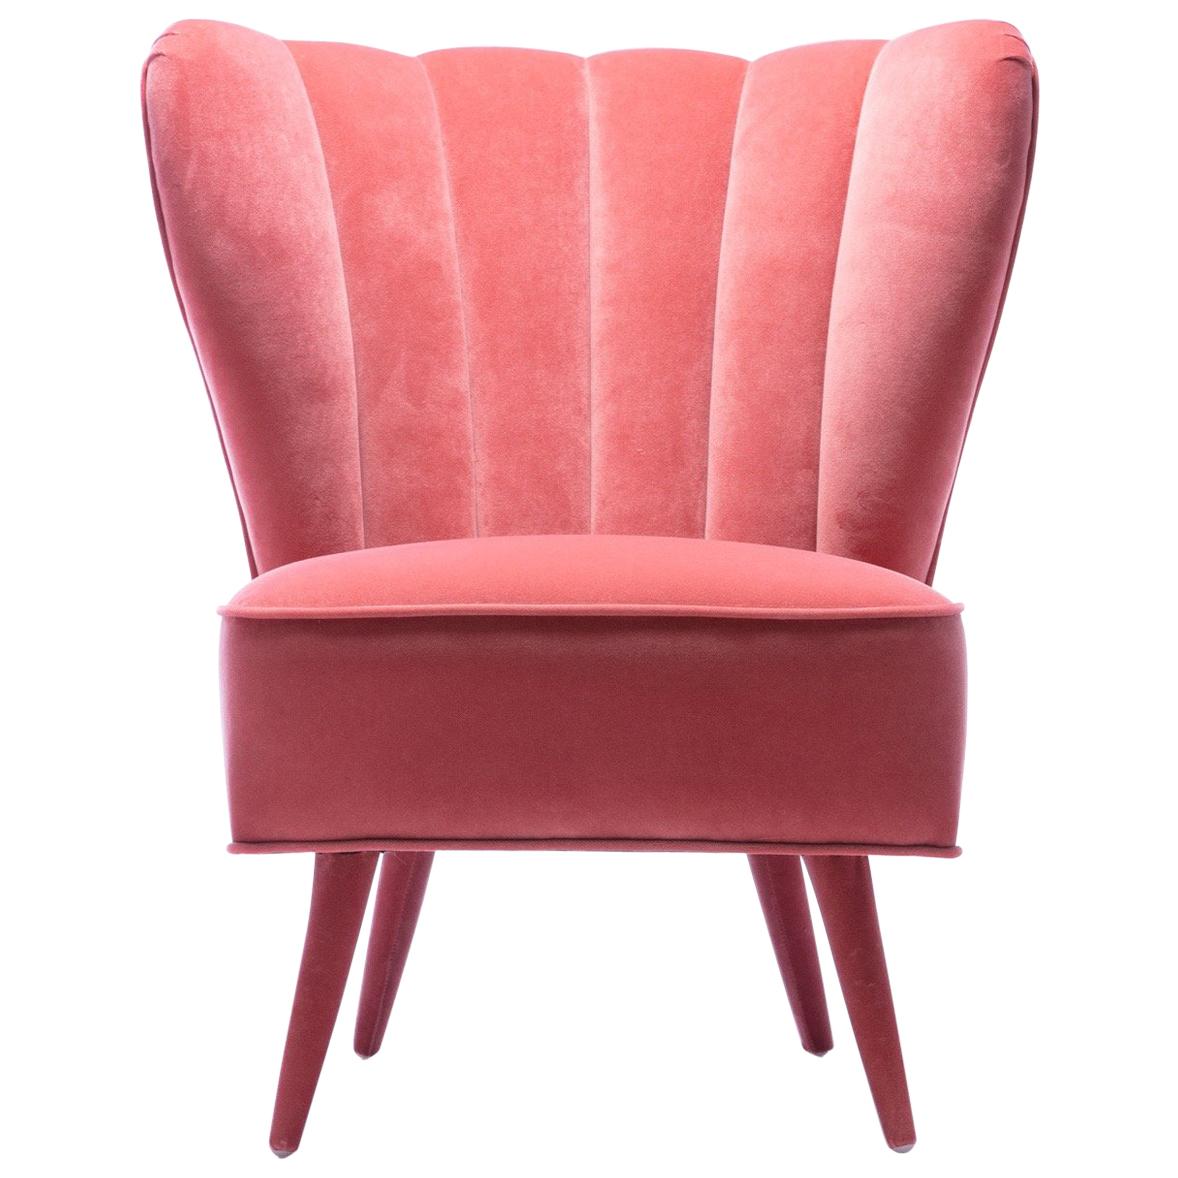 Chic Vintage Rose Pink Velvet Italian Slipper Chair, circa 1950